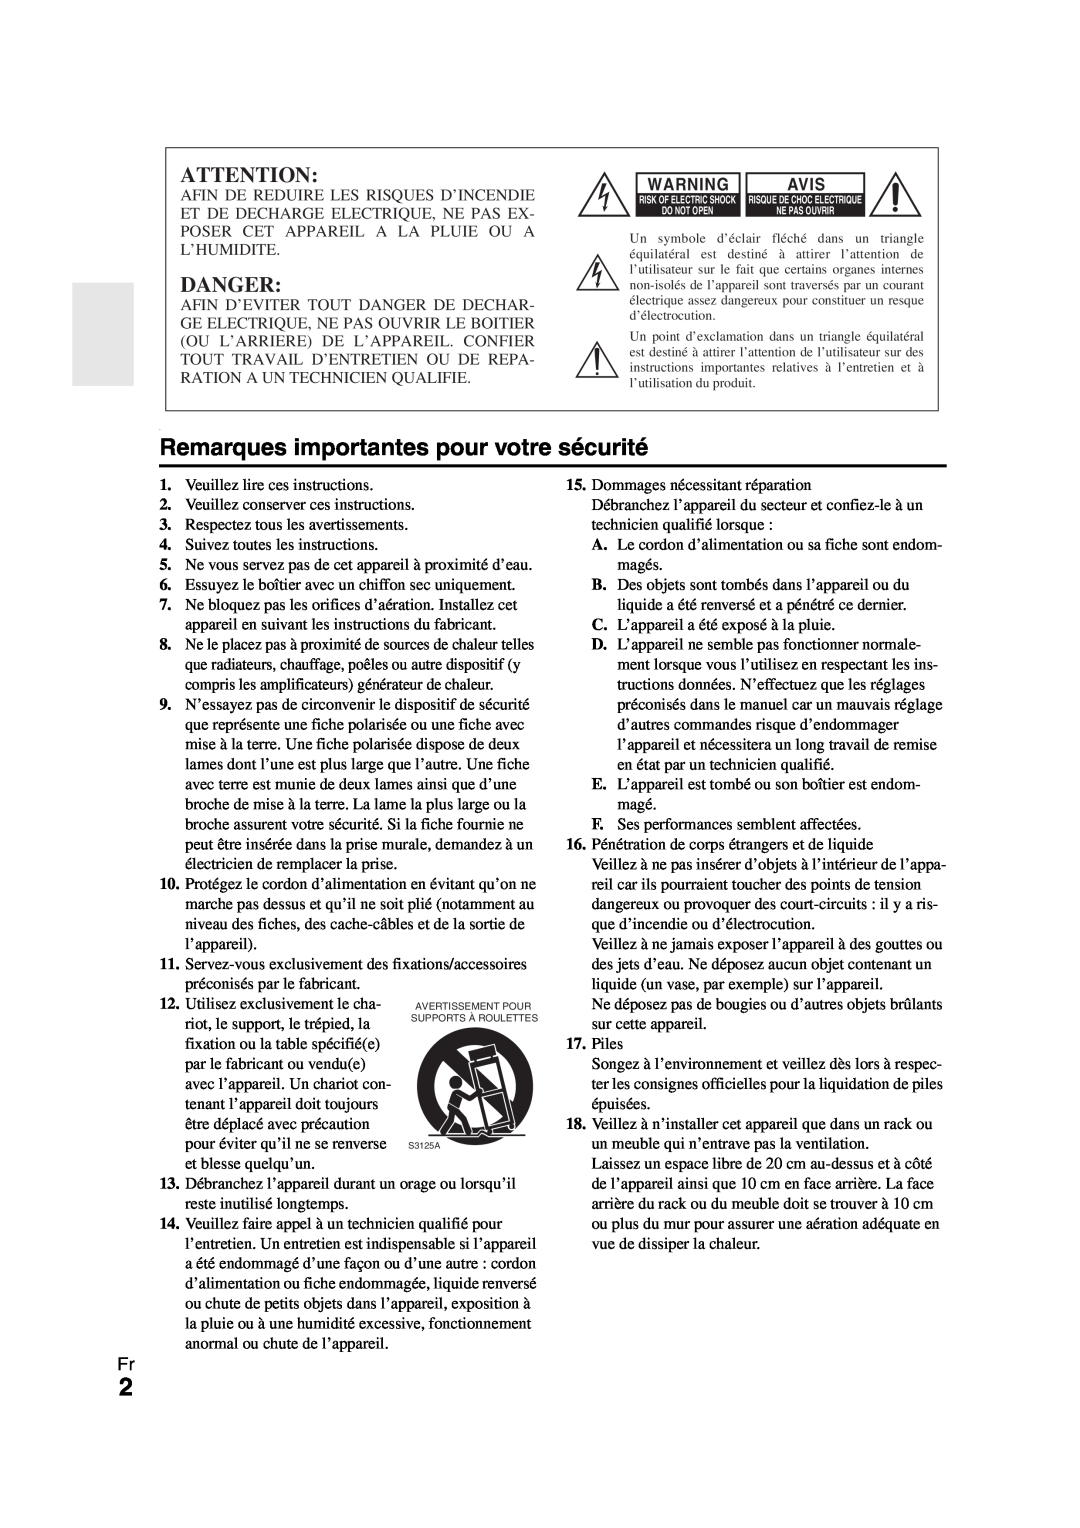 Onkyo HT-R980 instruction manual Remarques importantes pour votre sécurité, Danger, Avis 